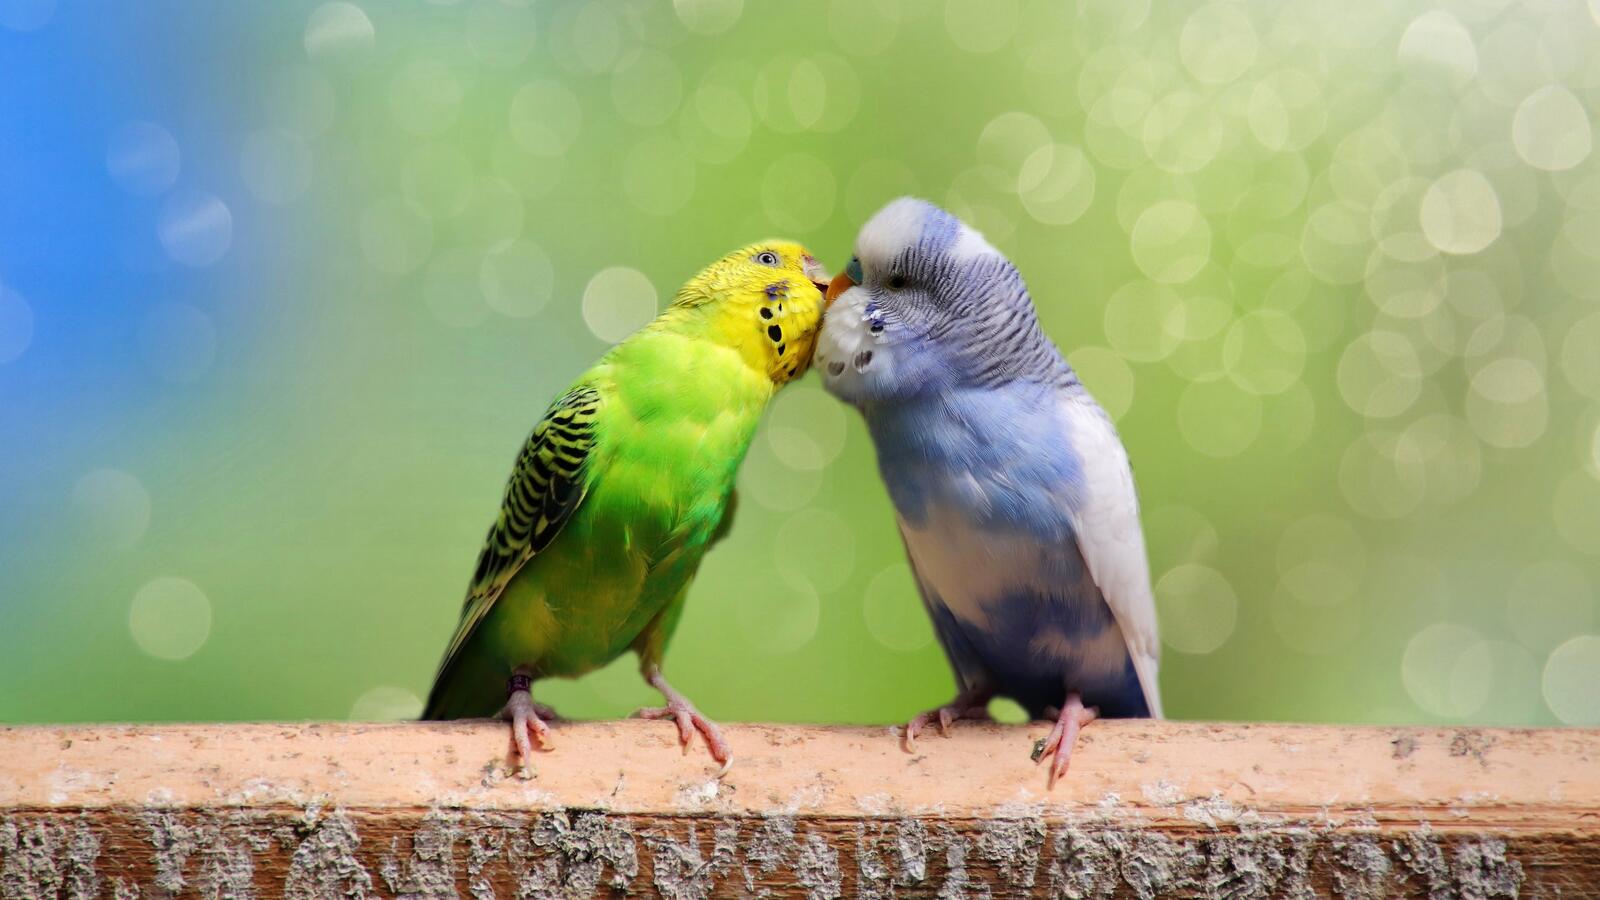 Пара волнистых попугаев целуется на размытом фоне